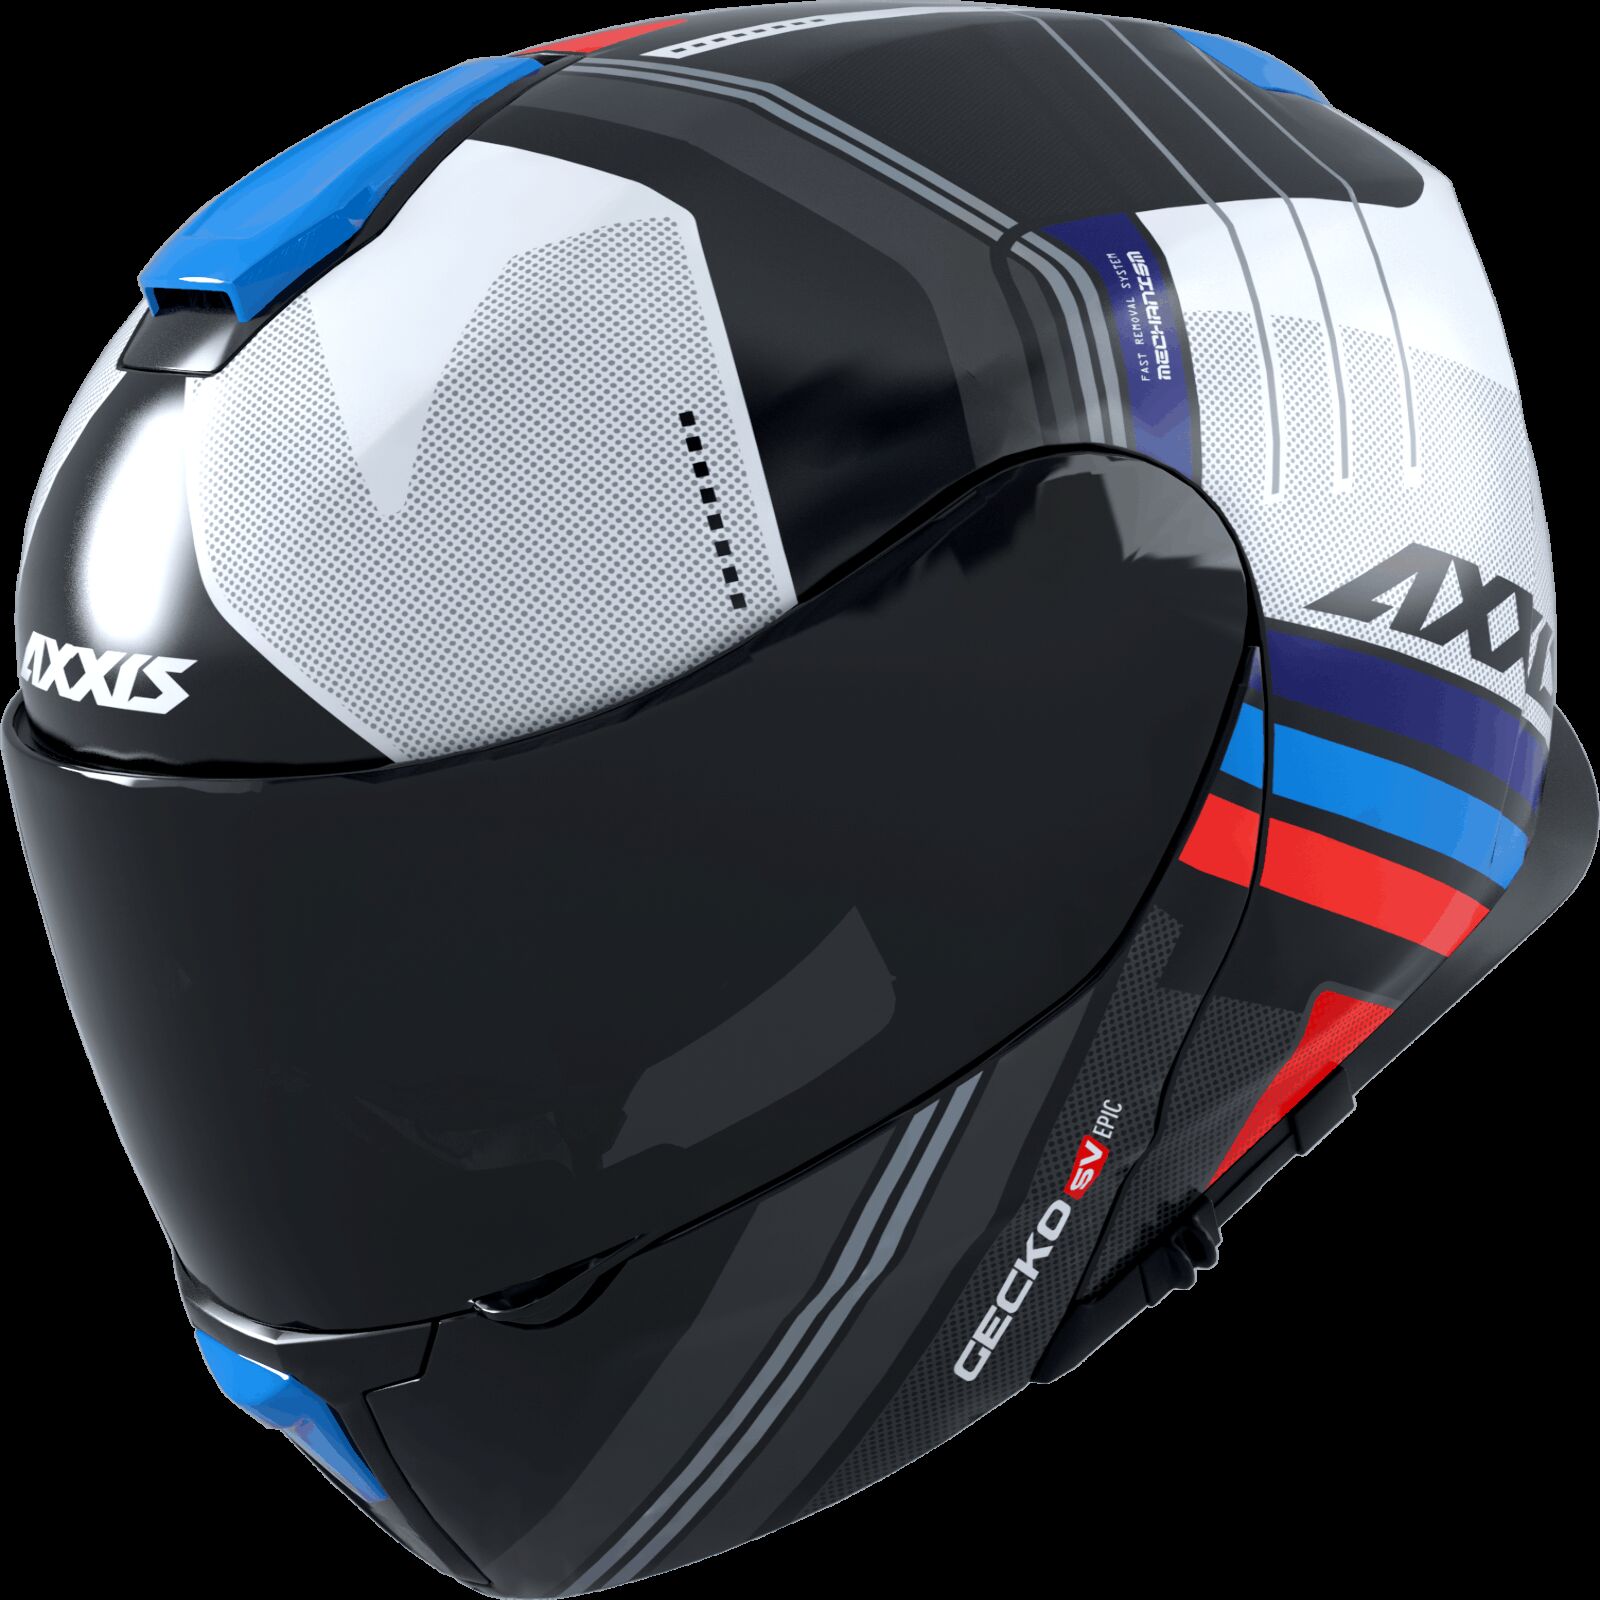 Obrázek produktu Výklopná helma AXXIS GECKO SV ABS epic b7 lesklá modrá XS 42627311713